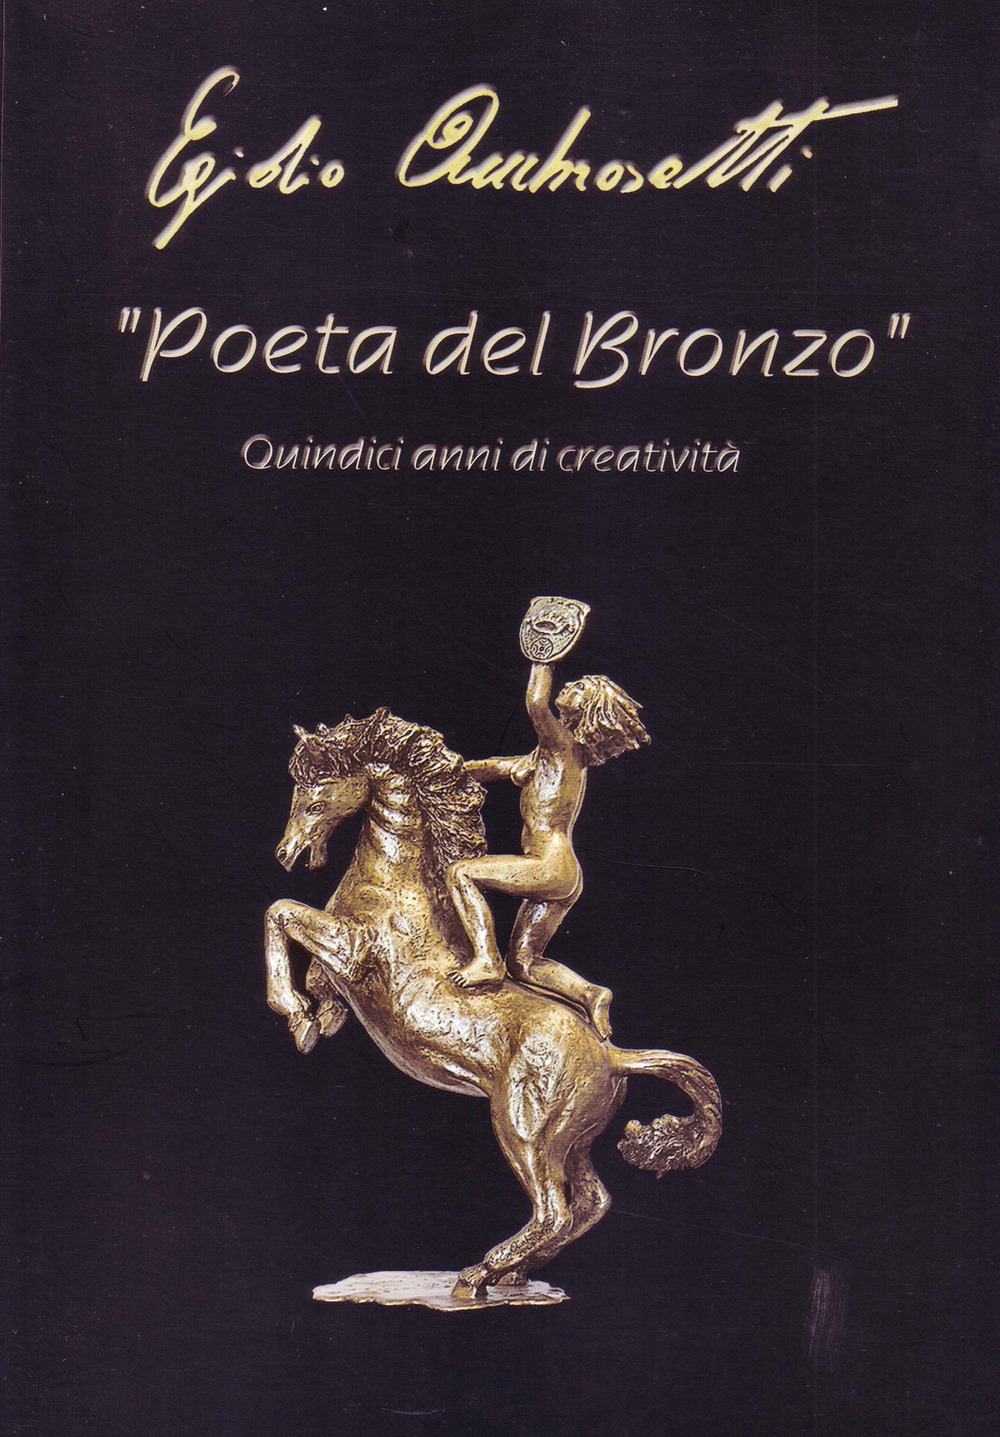 Poeta del bronzo. Egidio Ambrosetti, quindici anni di creatività